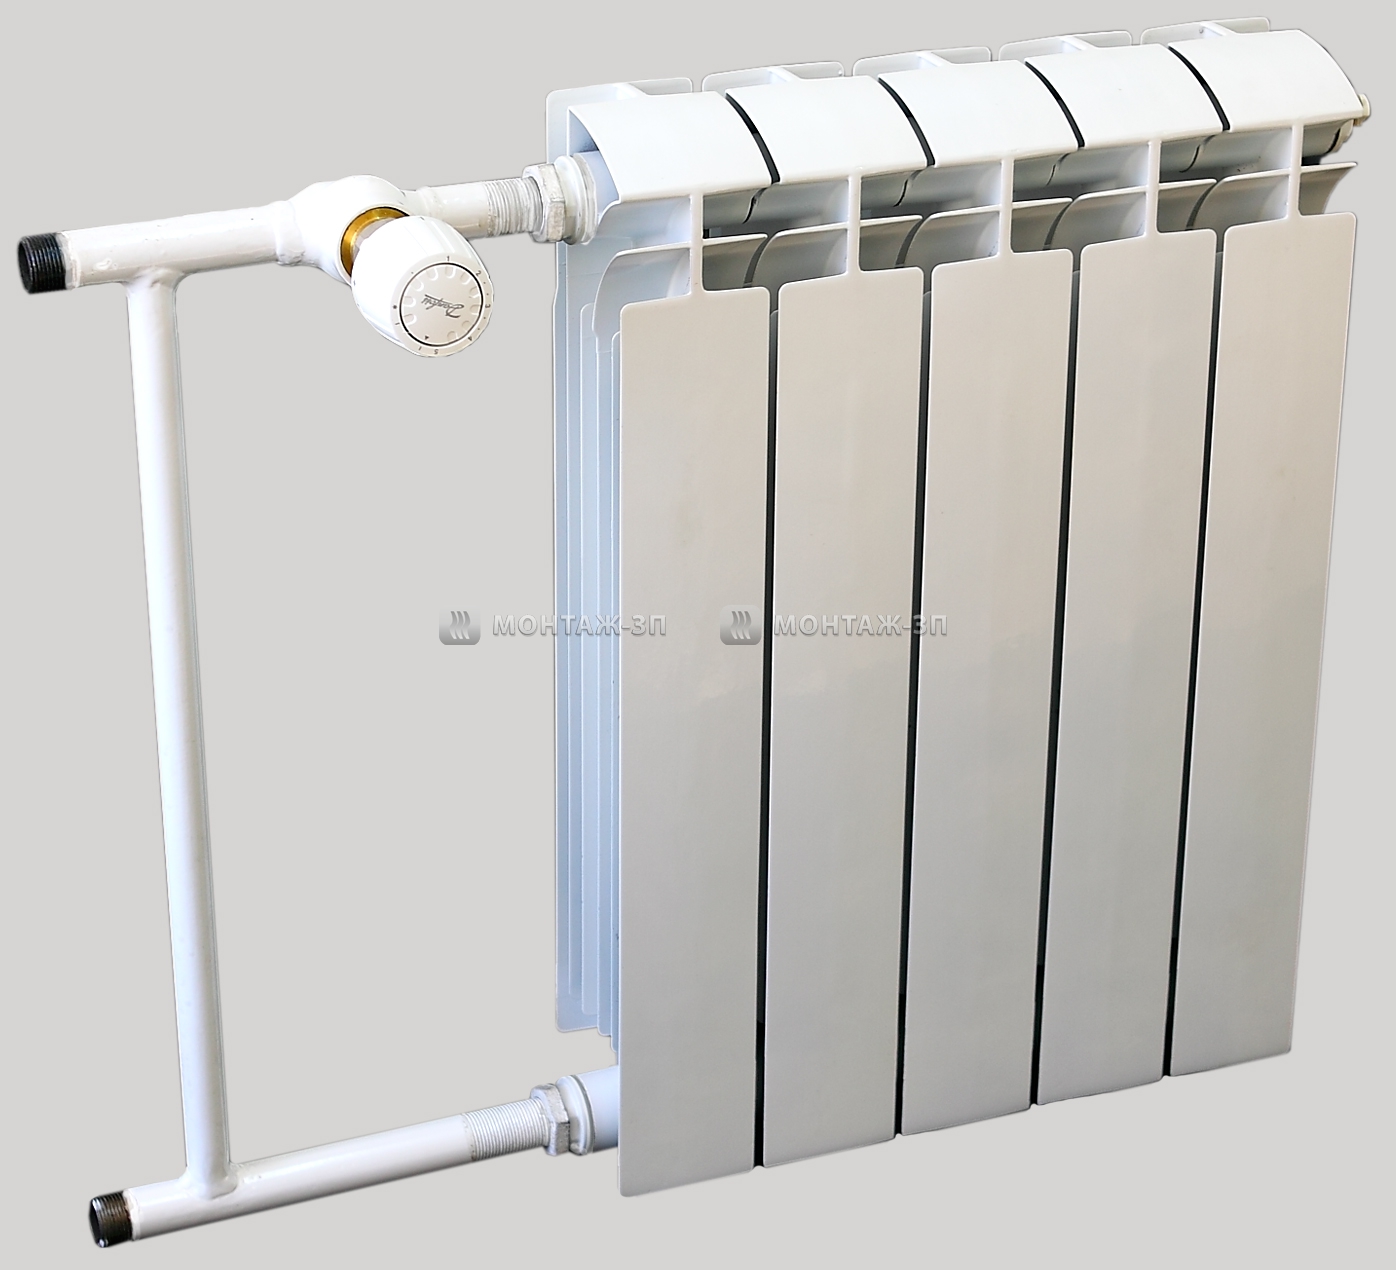 Обзор термостатов для отопительных систем, особенности установки в насосах, котлах и радиаторах